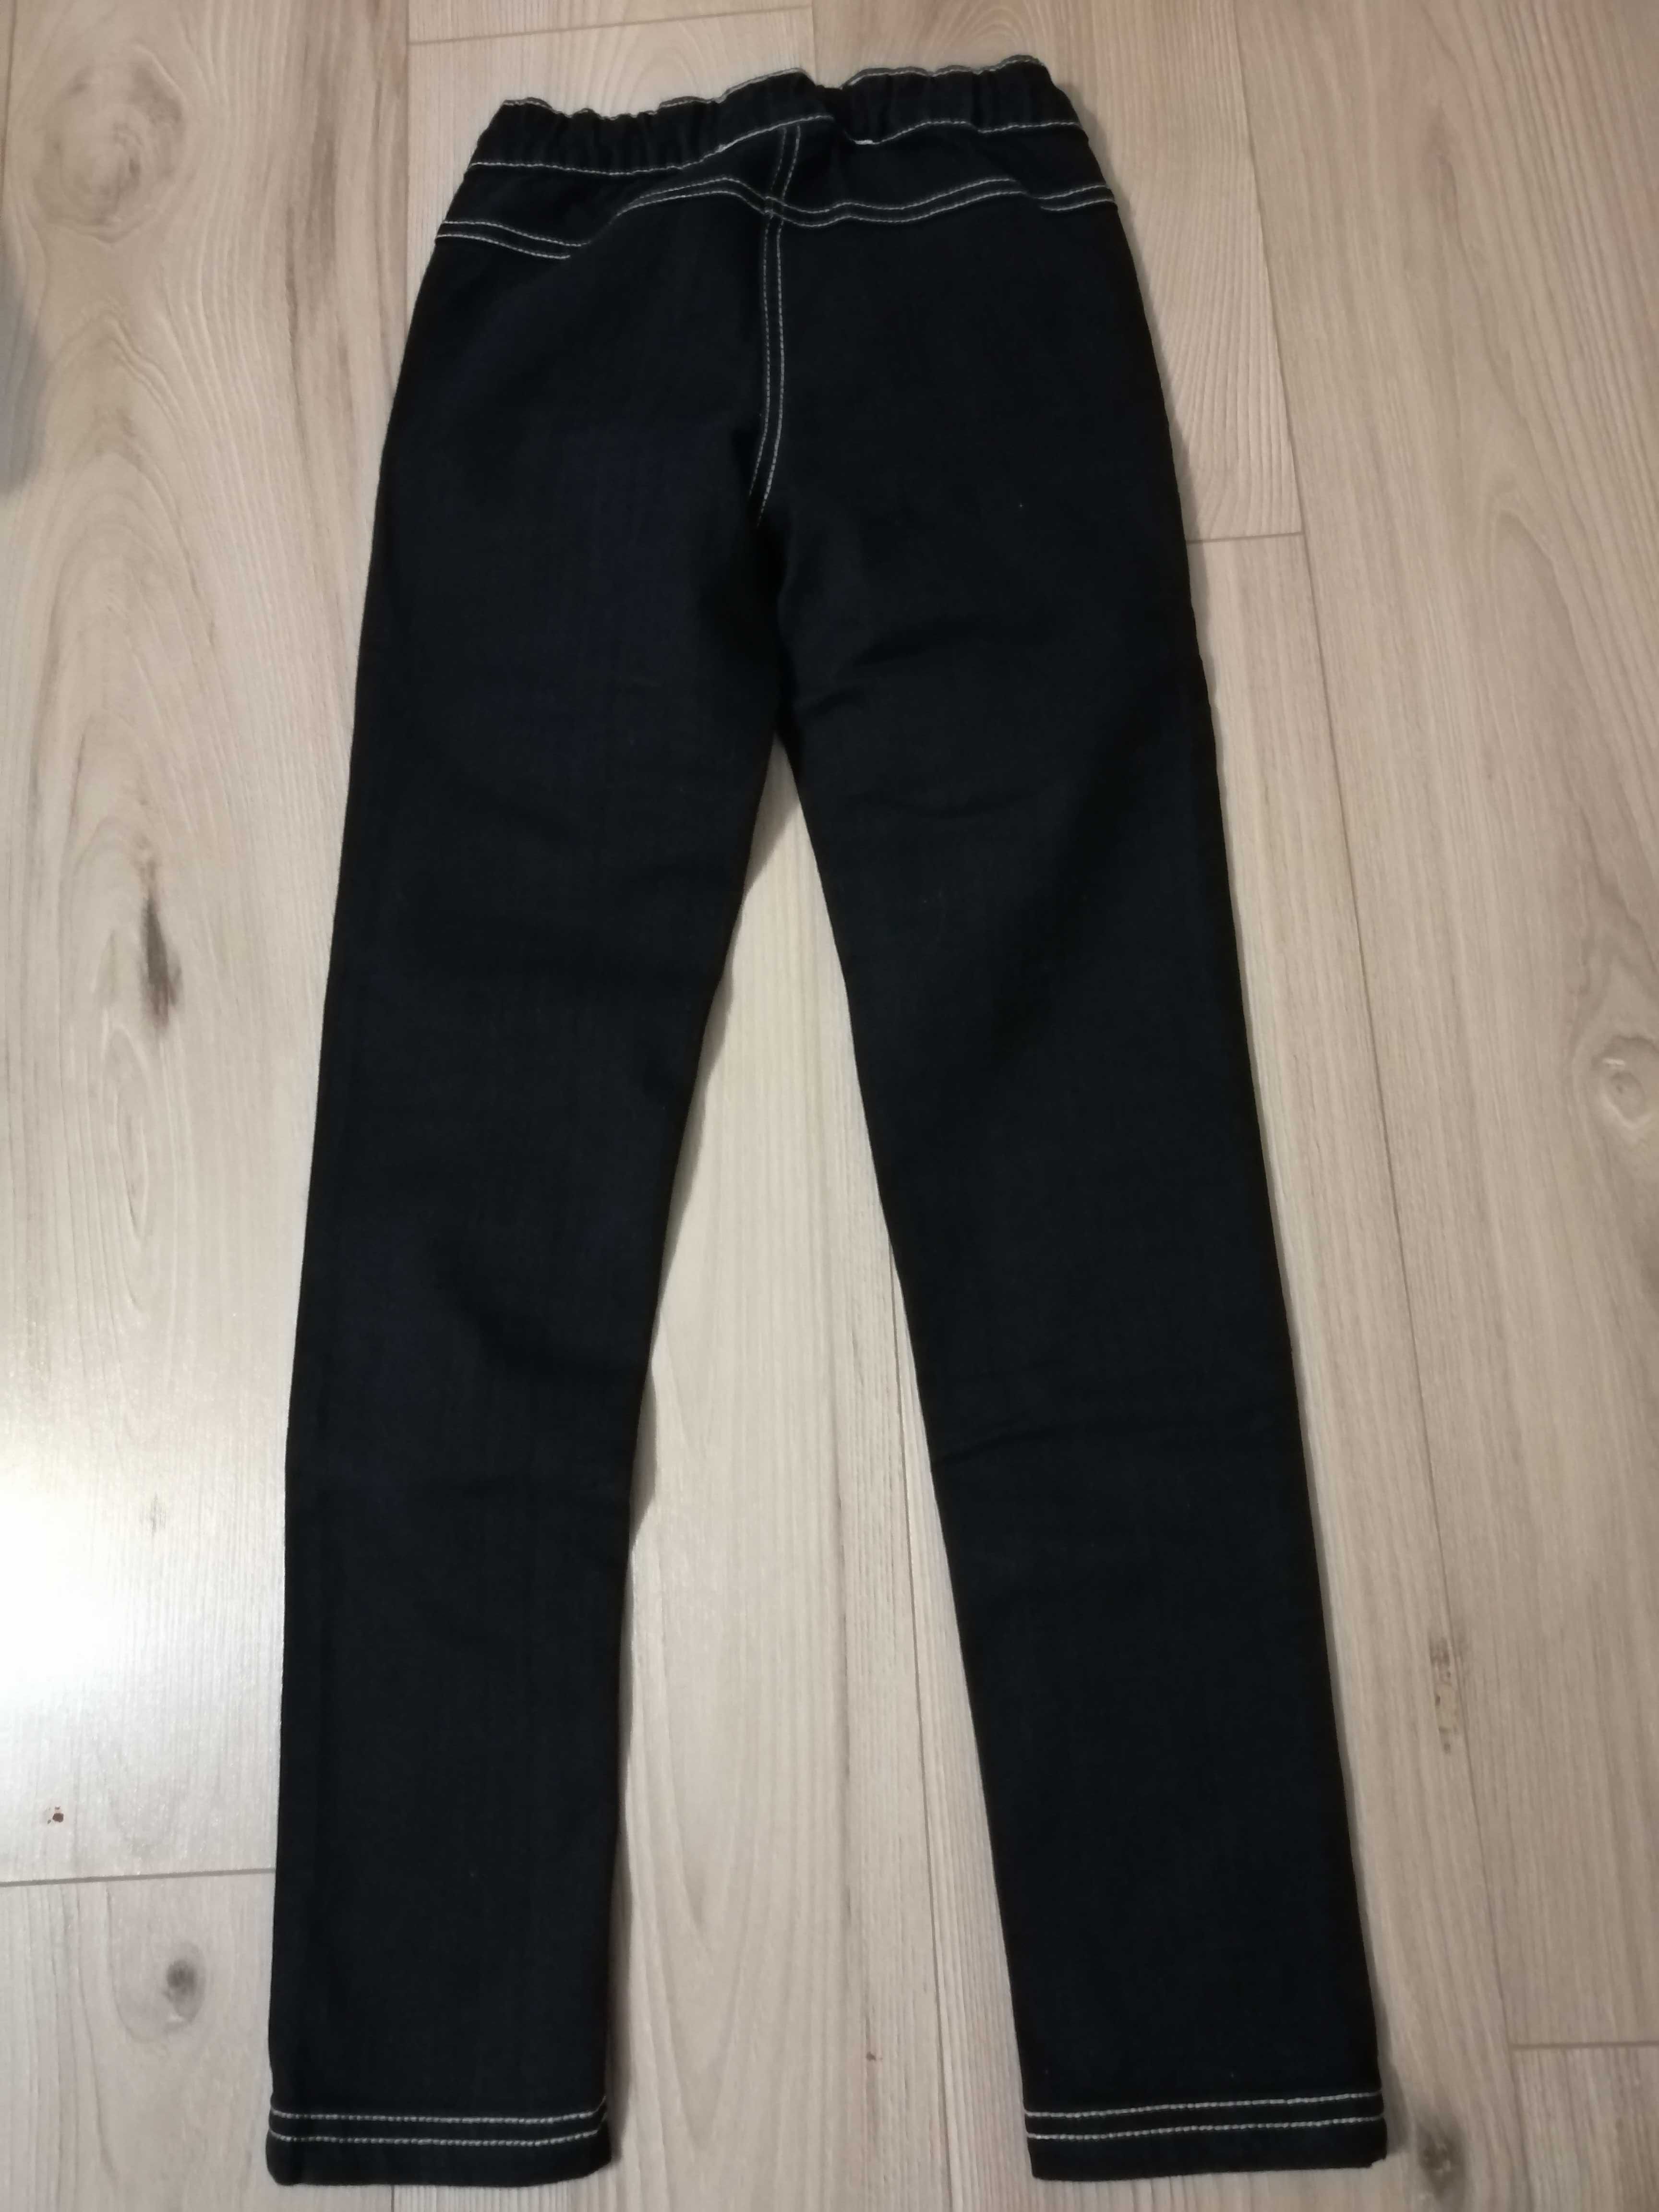 spodnie/legginsy jeansowe firmy Pepperts, dziewczynka, rozmiar 134/140